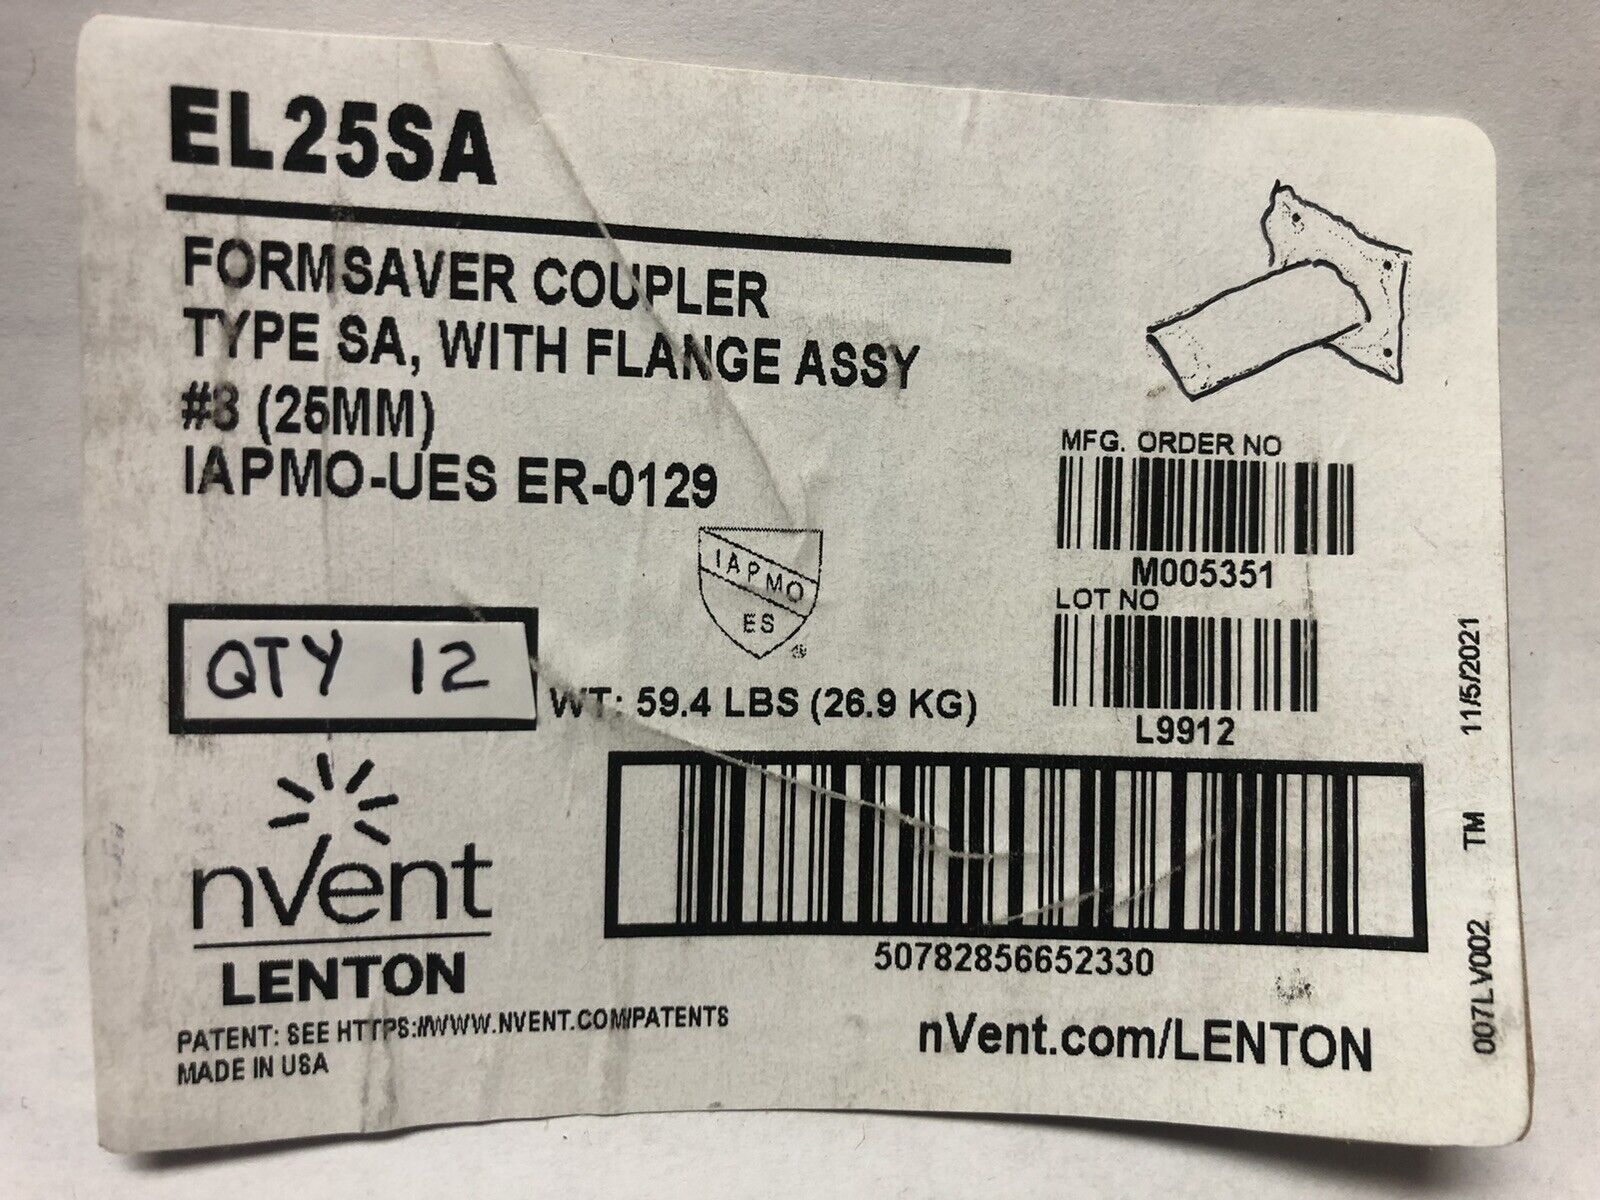 Lot of 12 - nVent Lenton #8 Rebar Coupler 25mm w/ Mounting Plate Part # EL25SA nVent / Lenton EL25SA - фотография #2